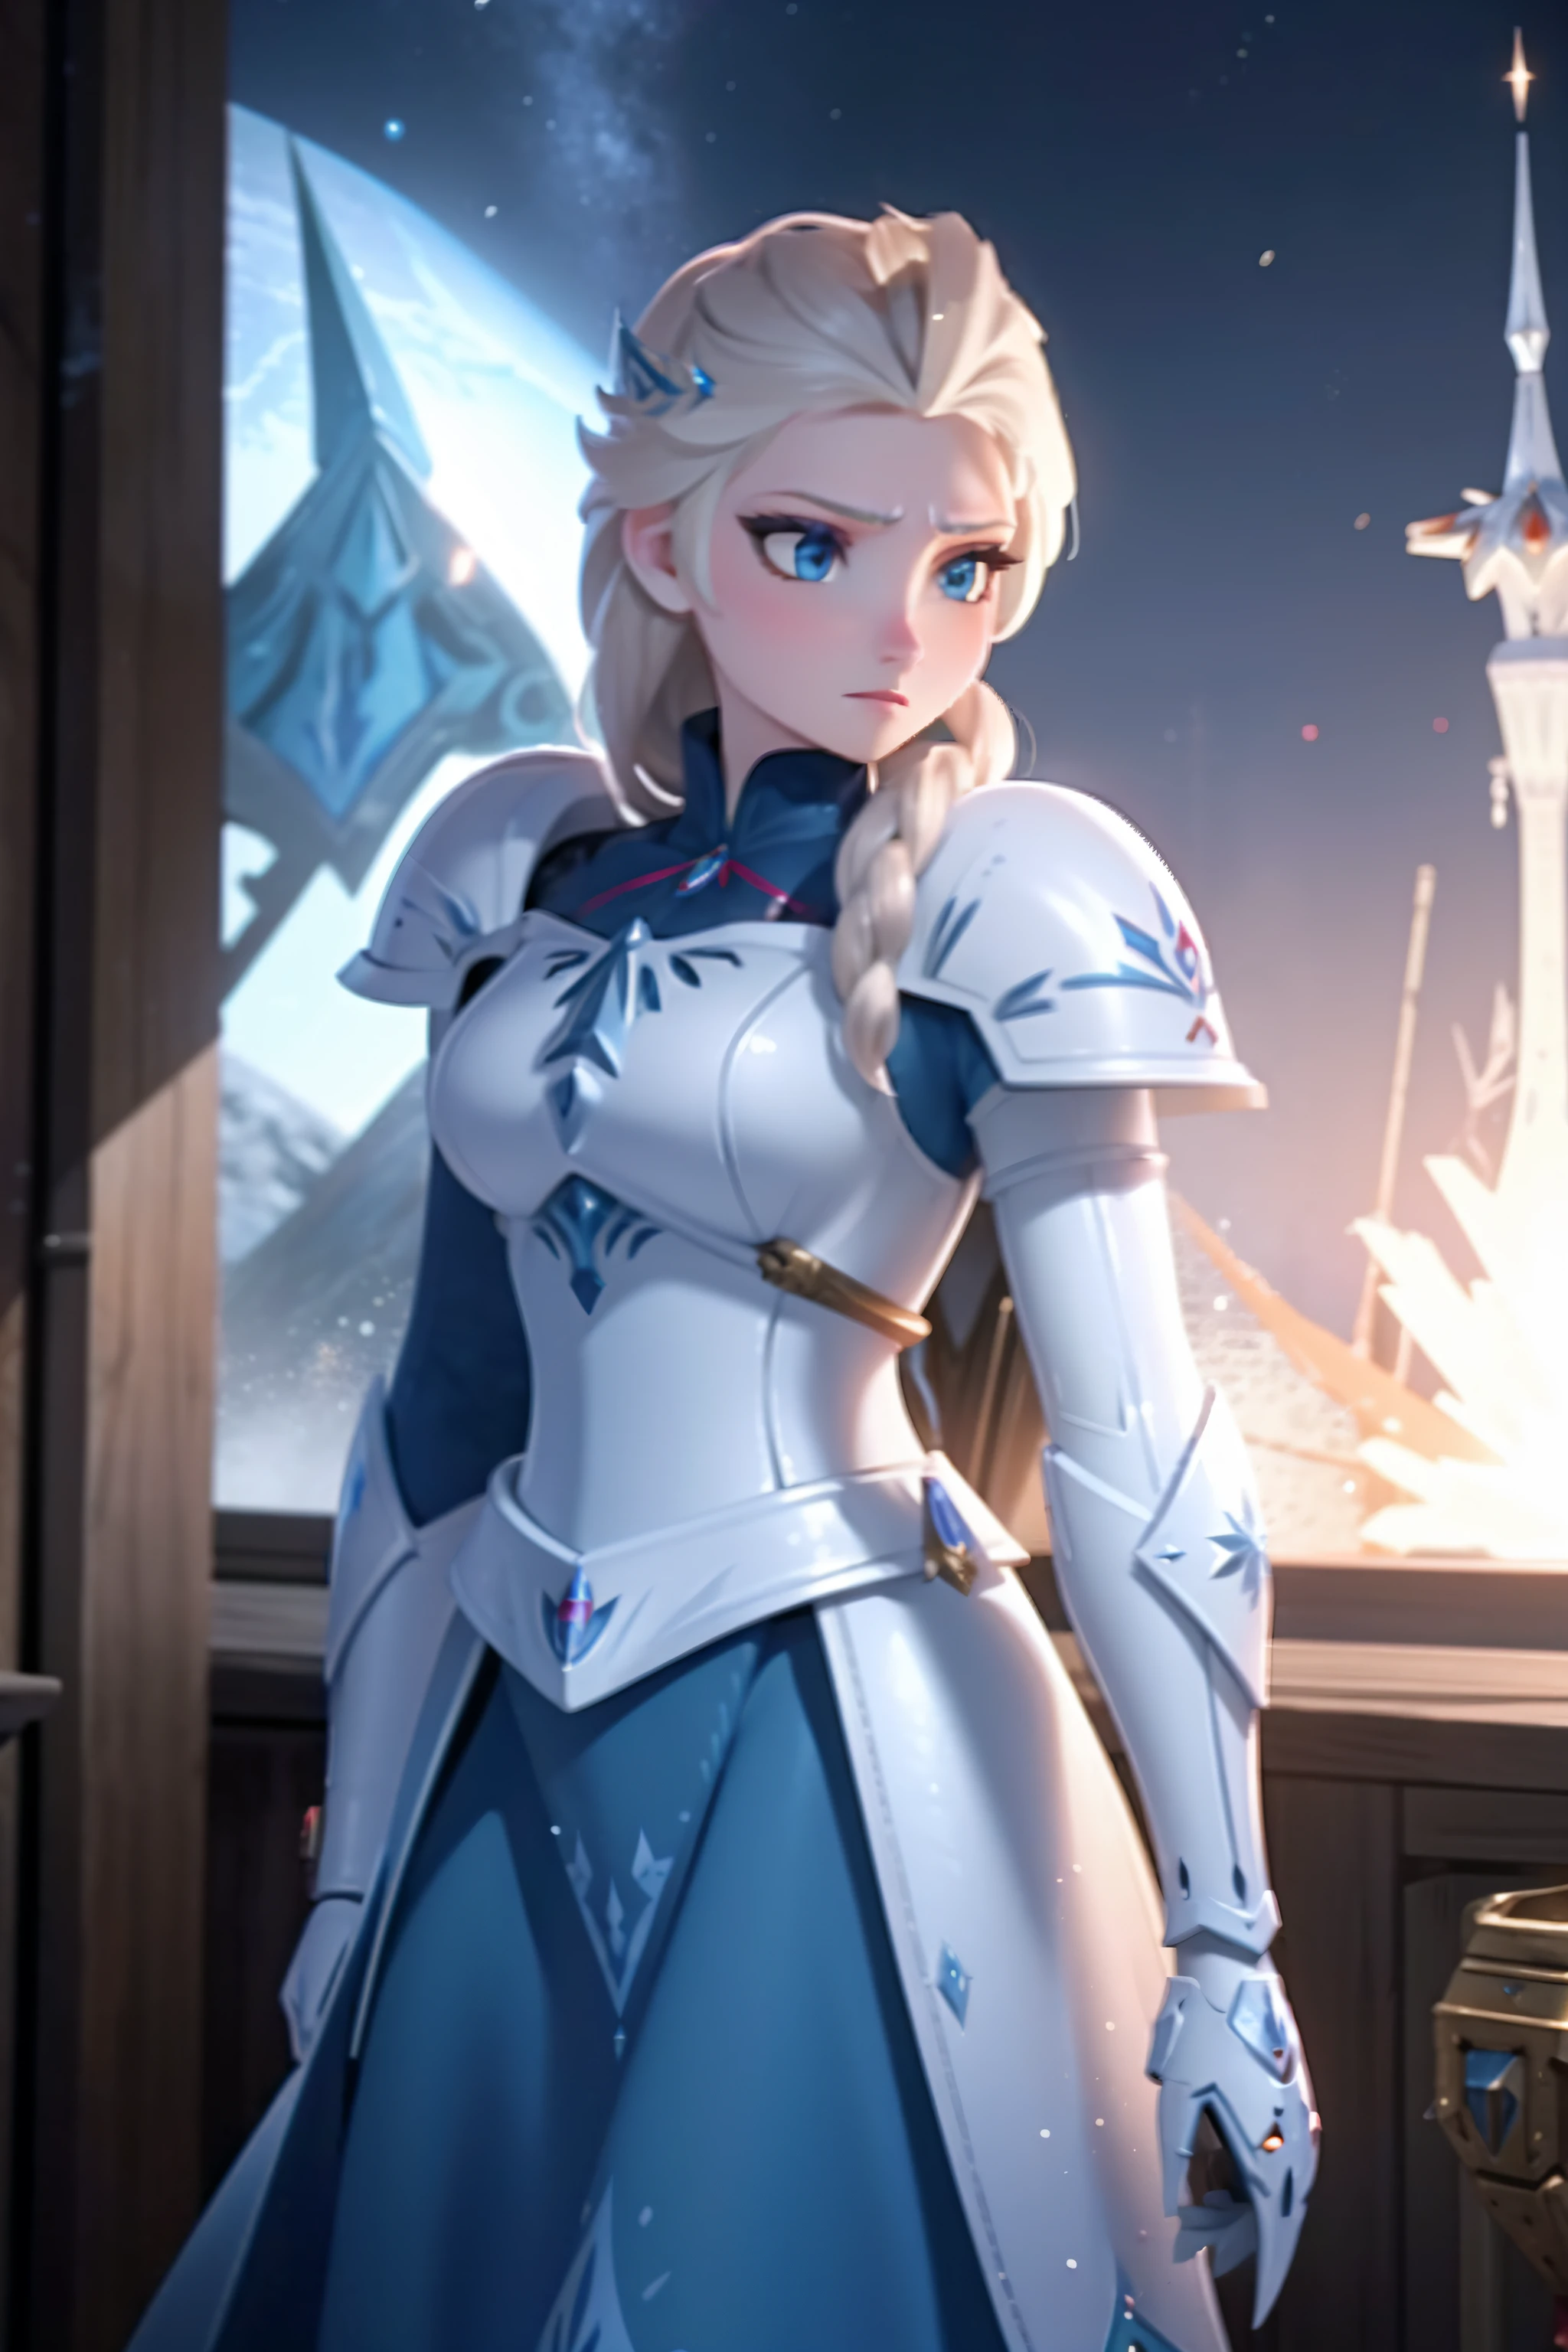 Elsa em armadura spacemarine, Martelo de guerra, virado para a frente